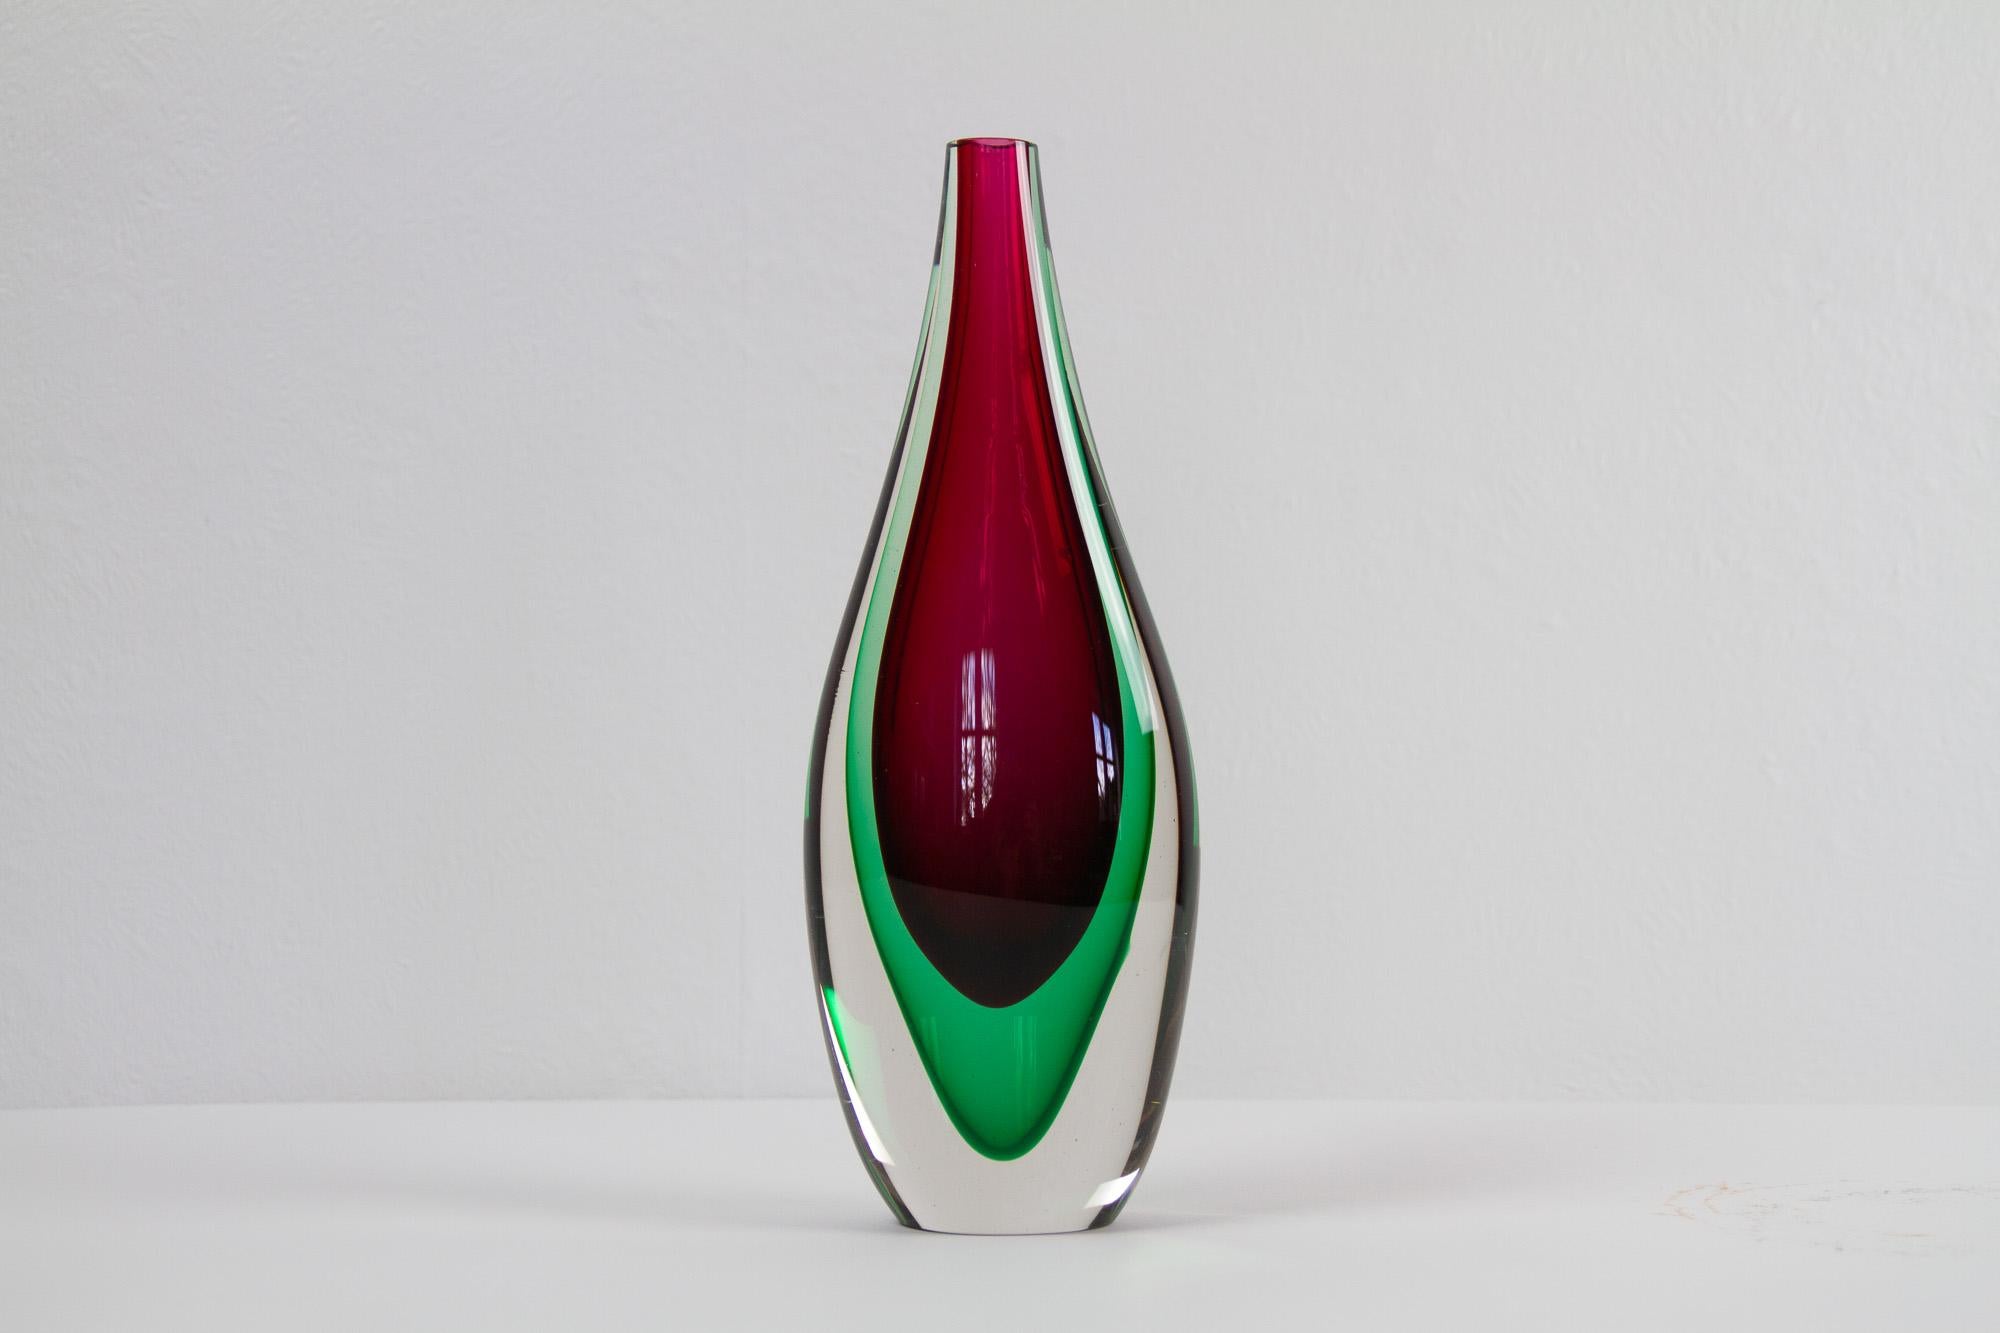 Vintage Murano Teardrop Sommerso Vase 1960er Jahre
Wunderschöne Vase aus klarem, grünem und magentafarbenem Glas, mundgeblasen auf der Insel Murano in der Sommerso-Technik, bei der verschiedene Glasfarben übereinander geschichtet werden.
Höhe 28